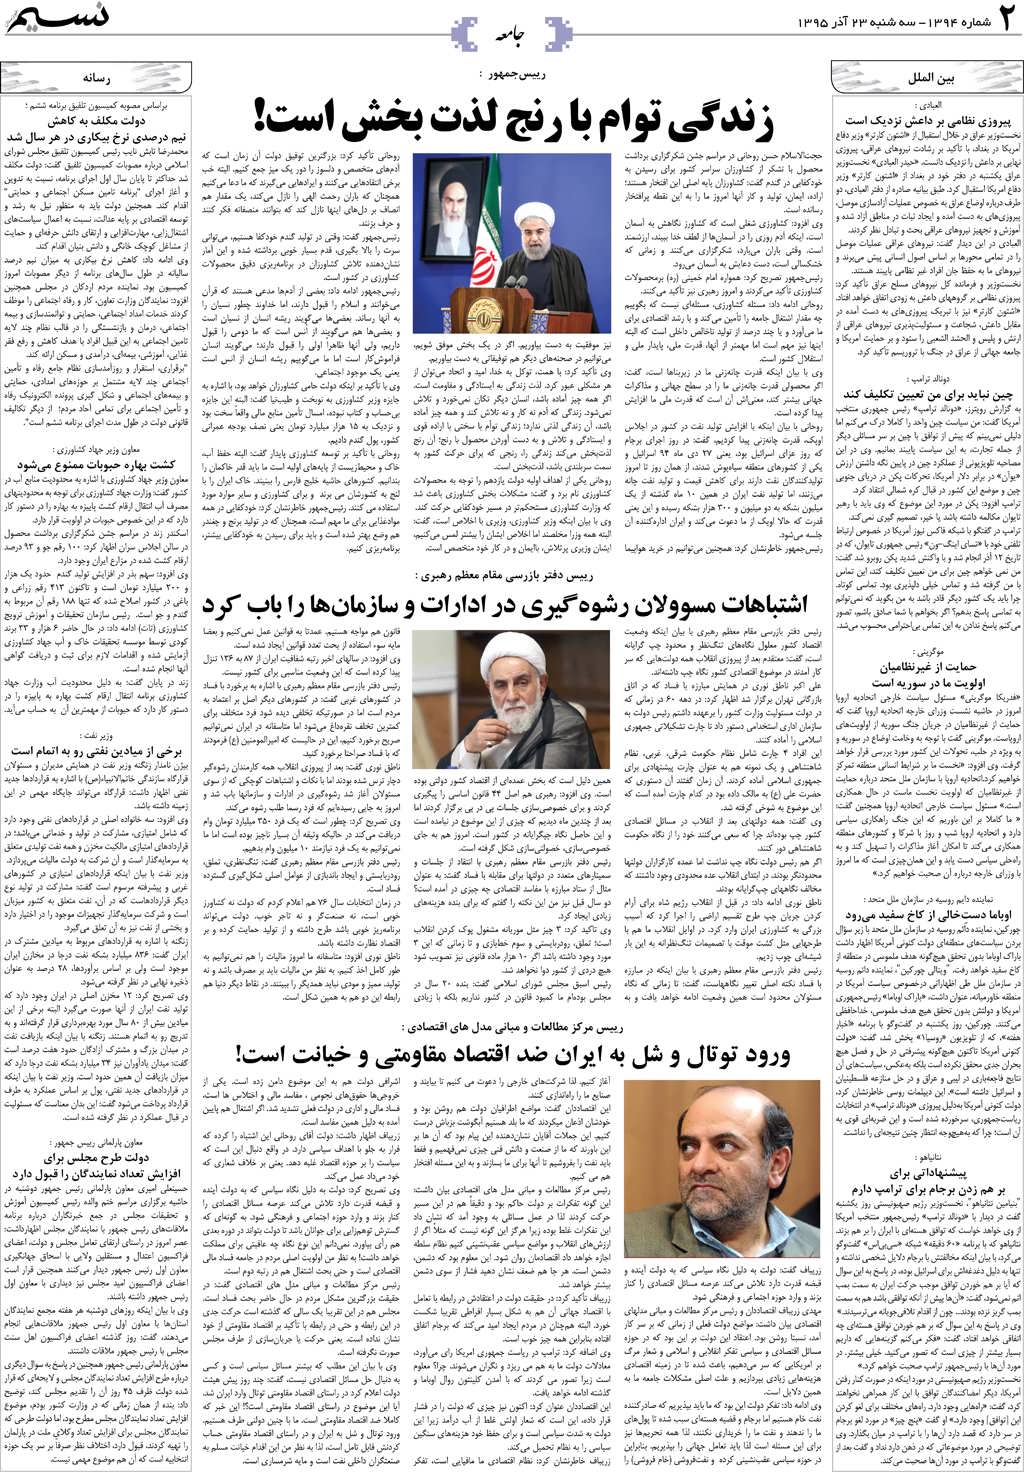 صفحه جامعه روزنامه نسیم شماره 1394